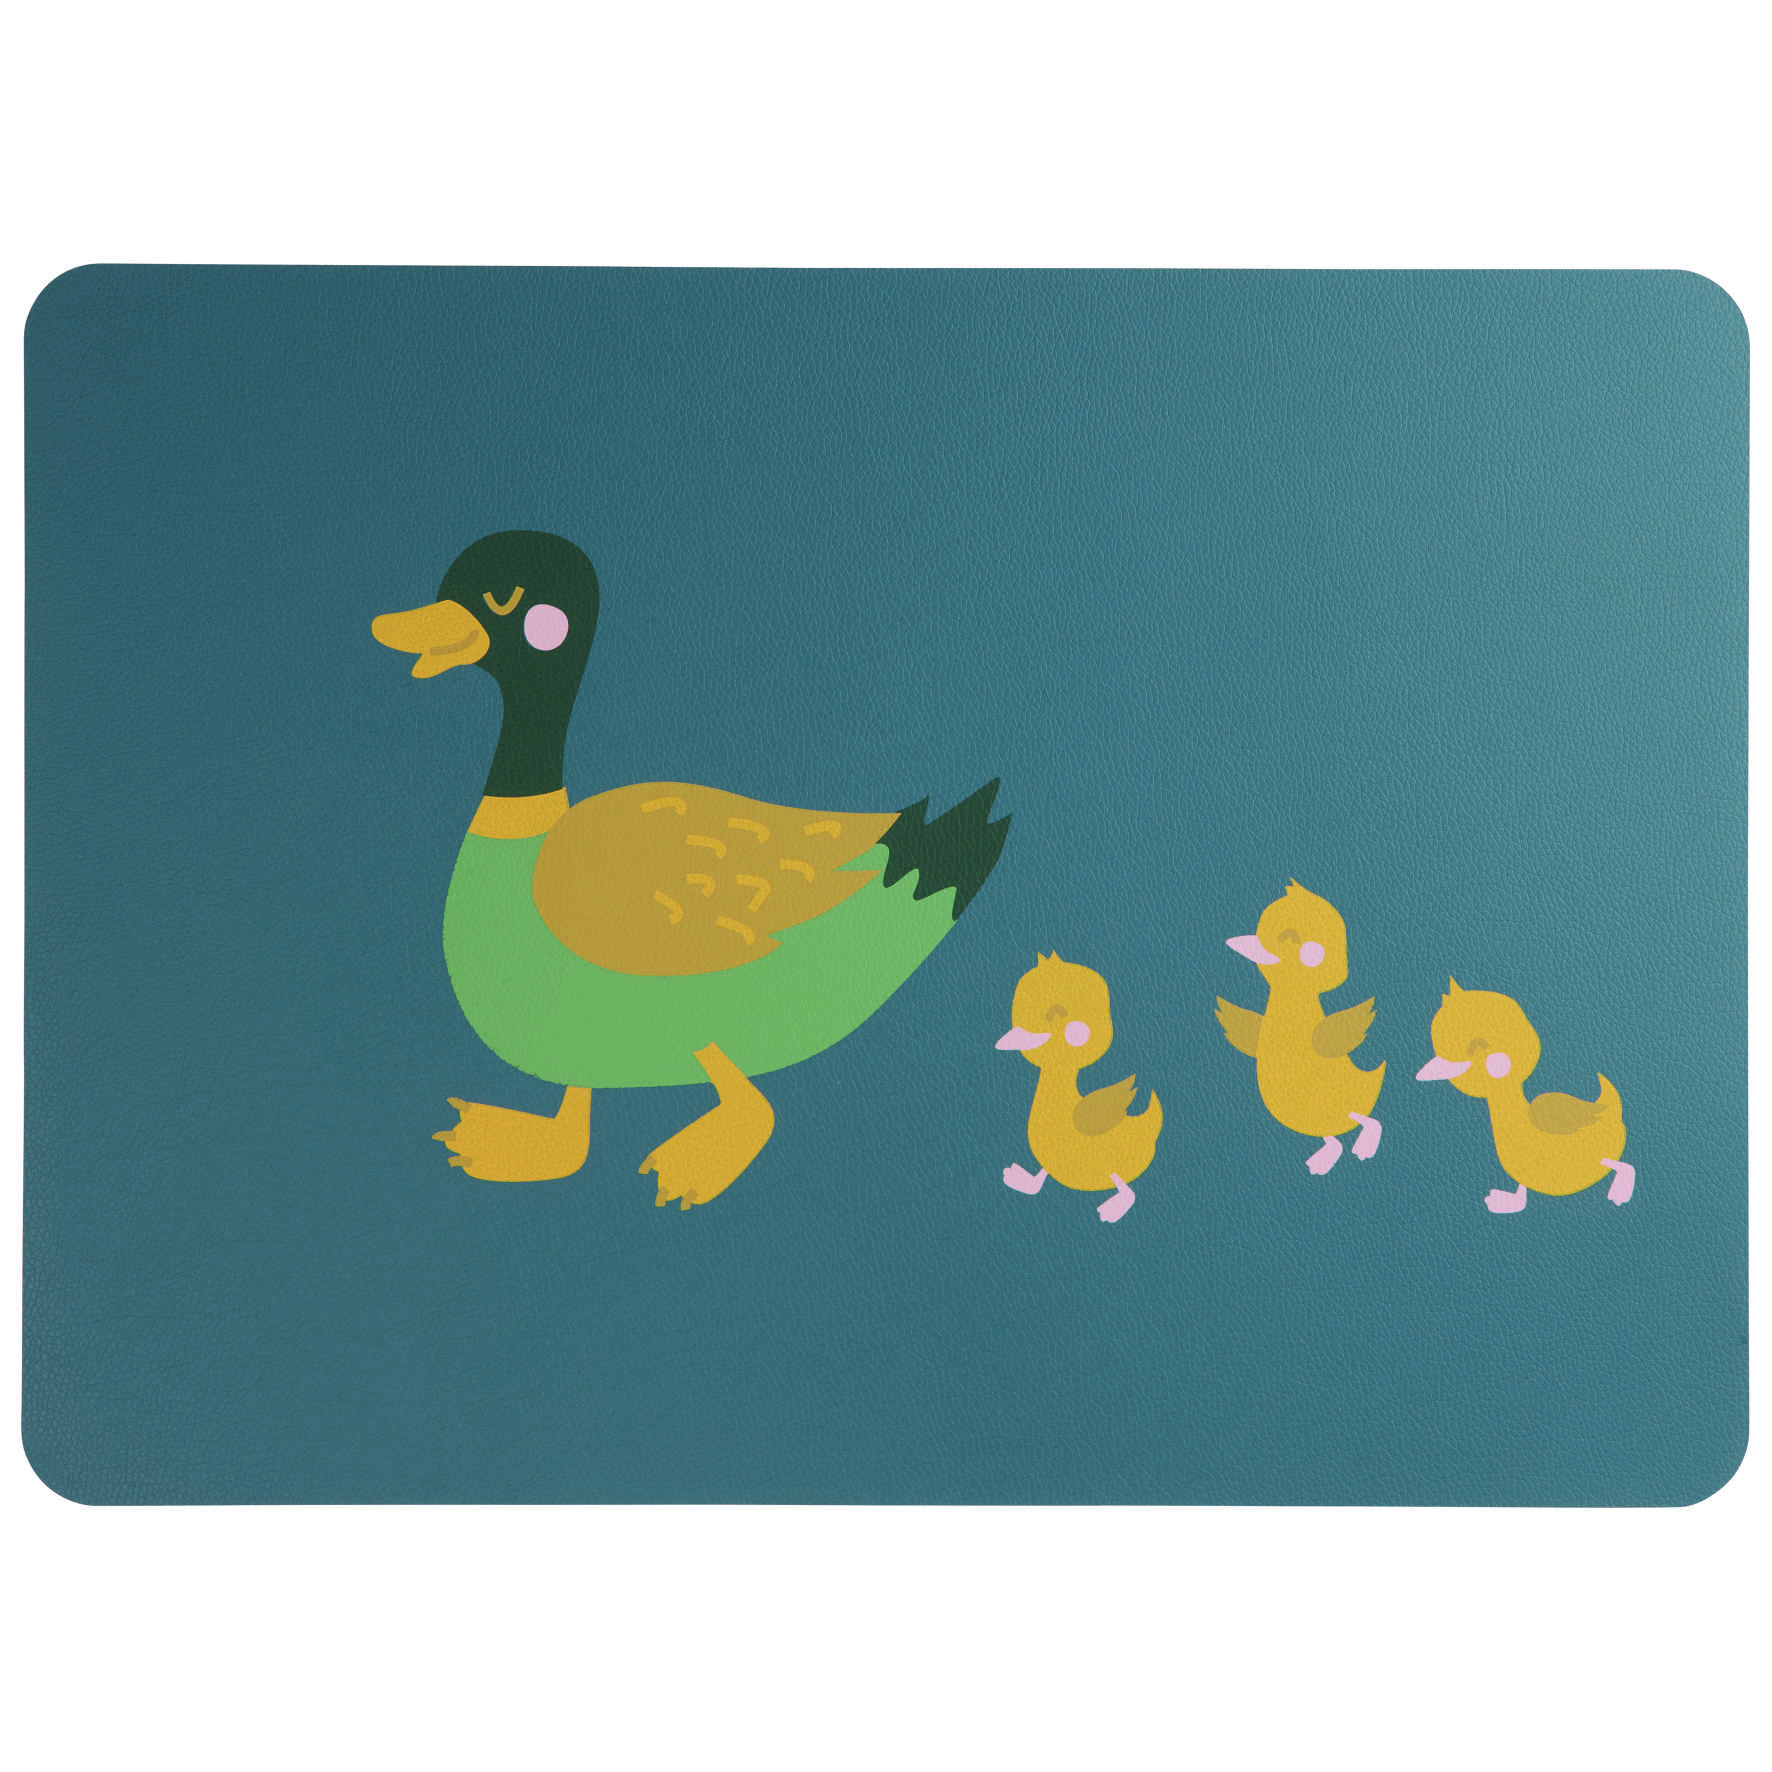 ASA - Tischset, Kids, 46x33cm Duck Emil wiht Ducklings